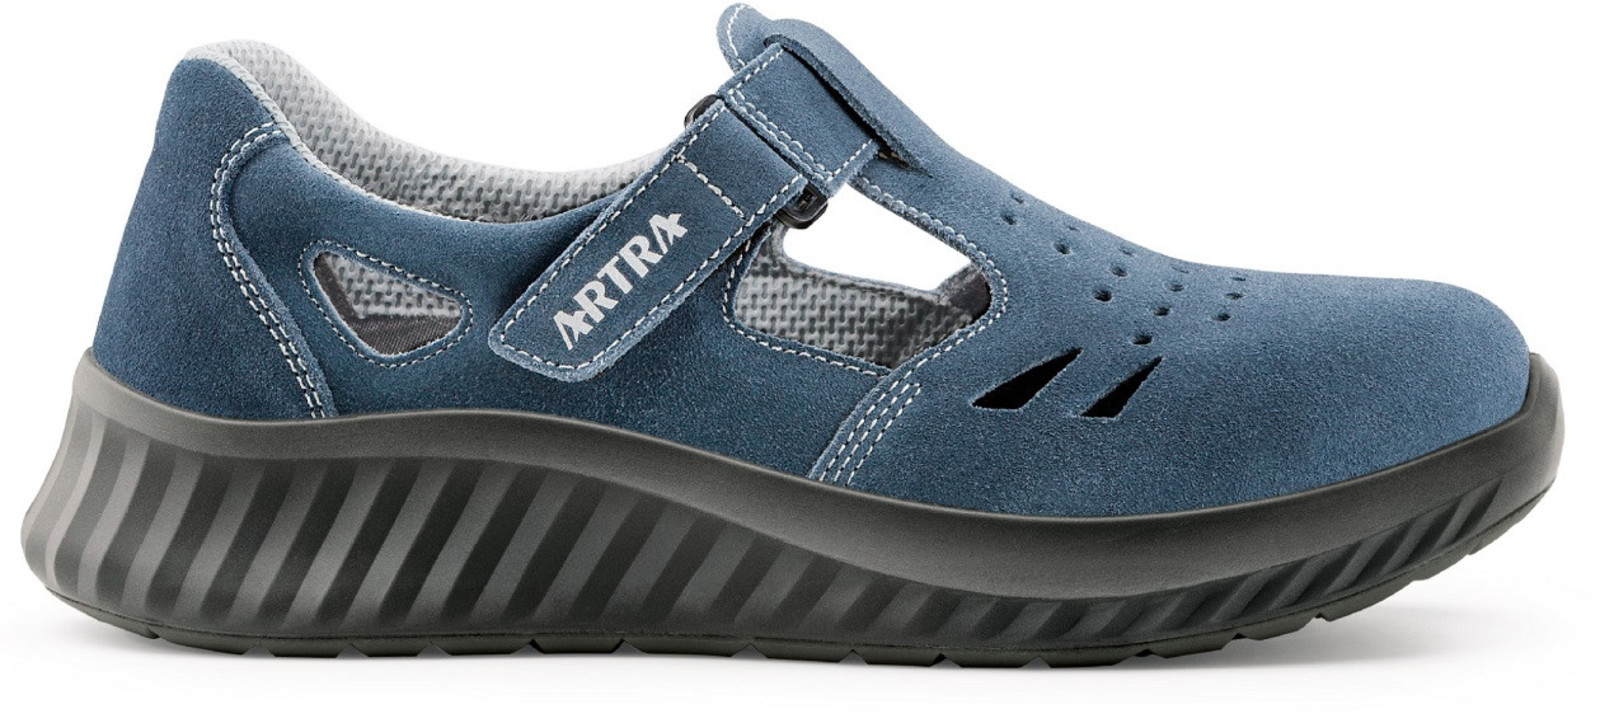 Bezpečnostné sandále Artra Armen 9007 9360 S1 - veľkosť: 44, farba: modrá